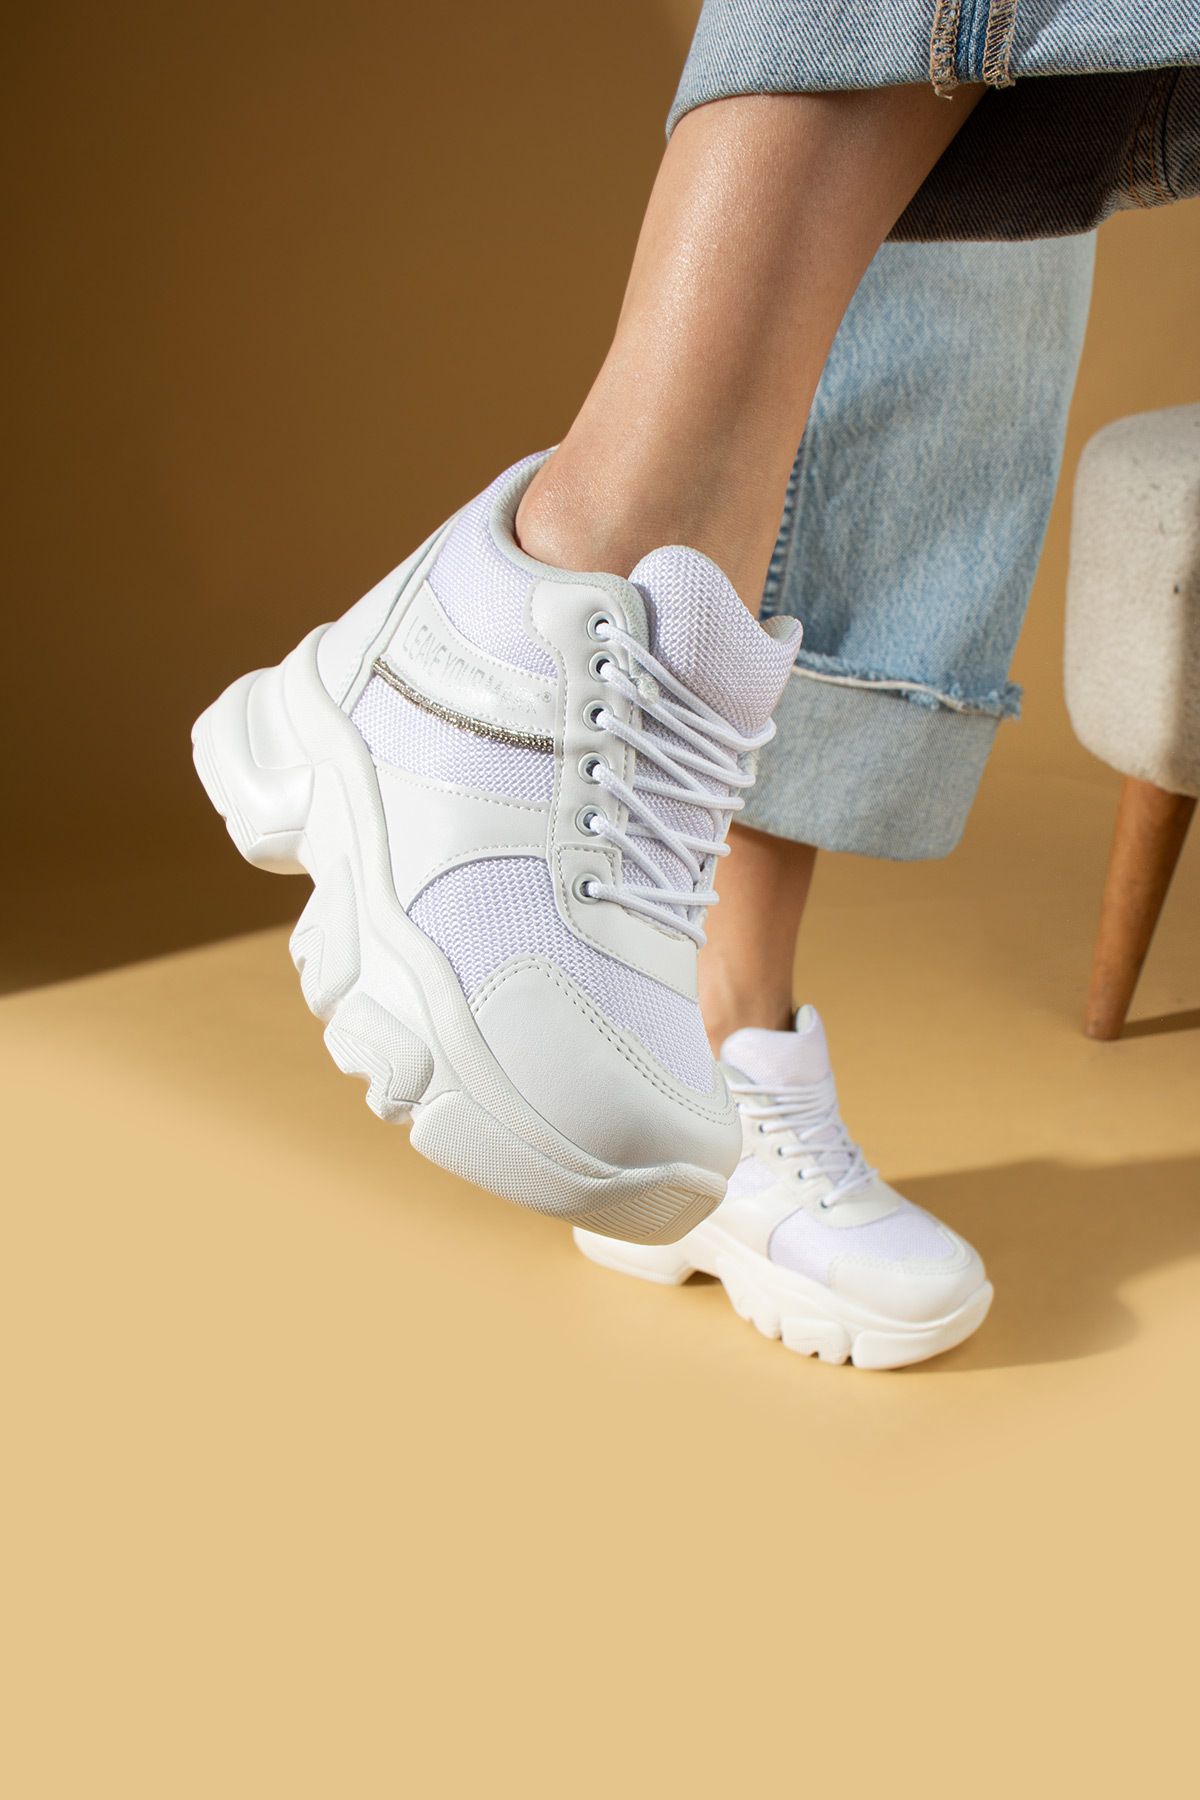 Pembe Potin Kadın Beyaz Poli Rahat Taban Gizli Topuk Tarz Bağcıklı Spor Sneaker Ayakkabı